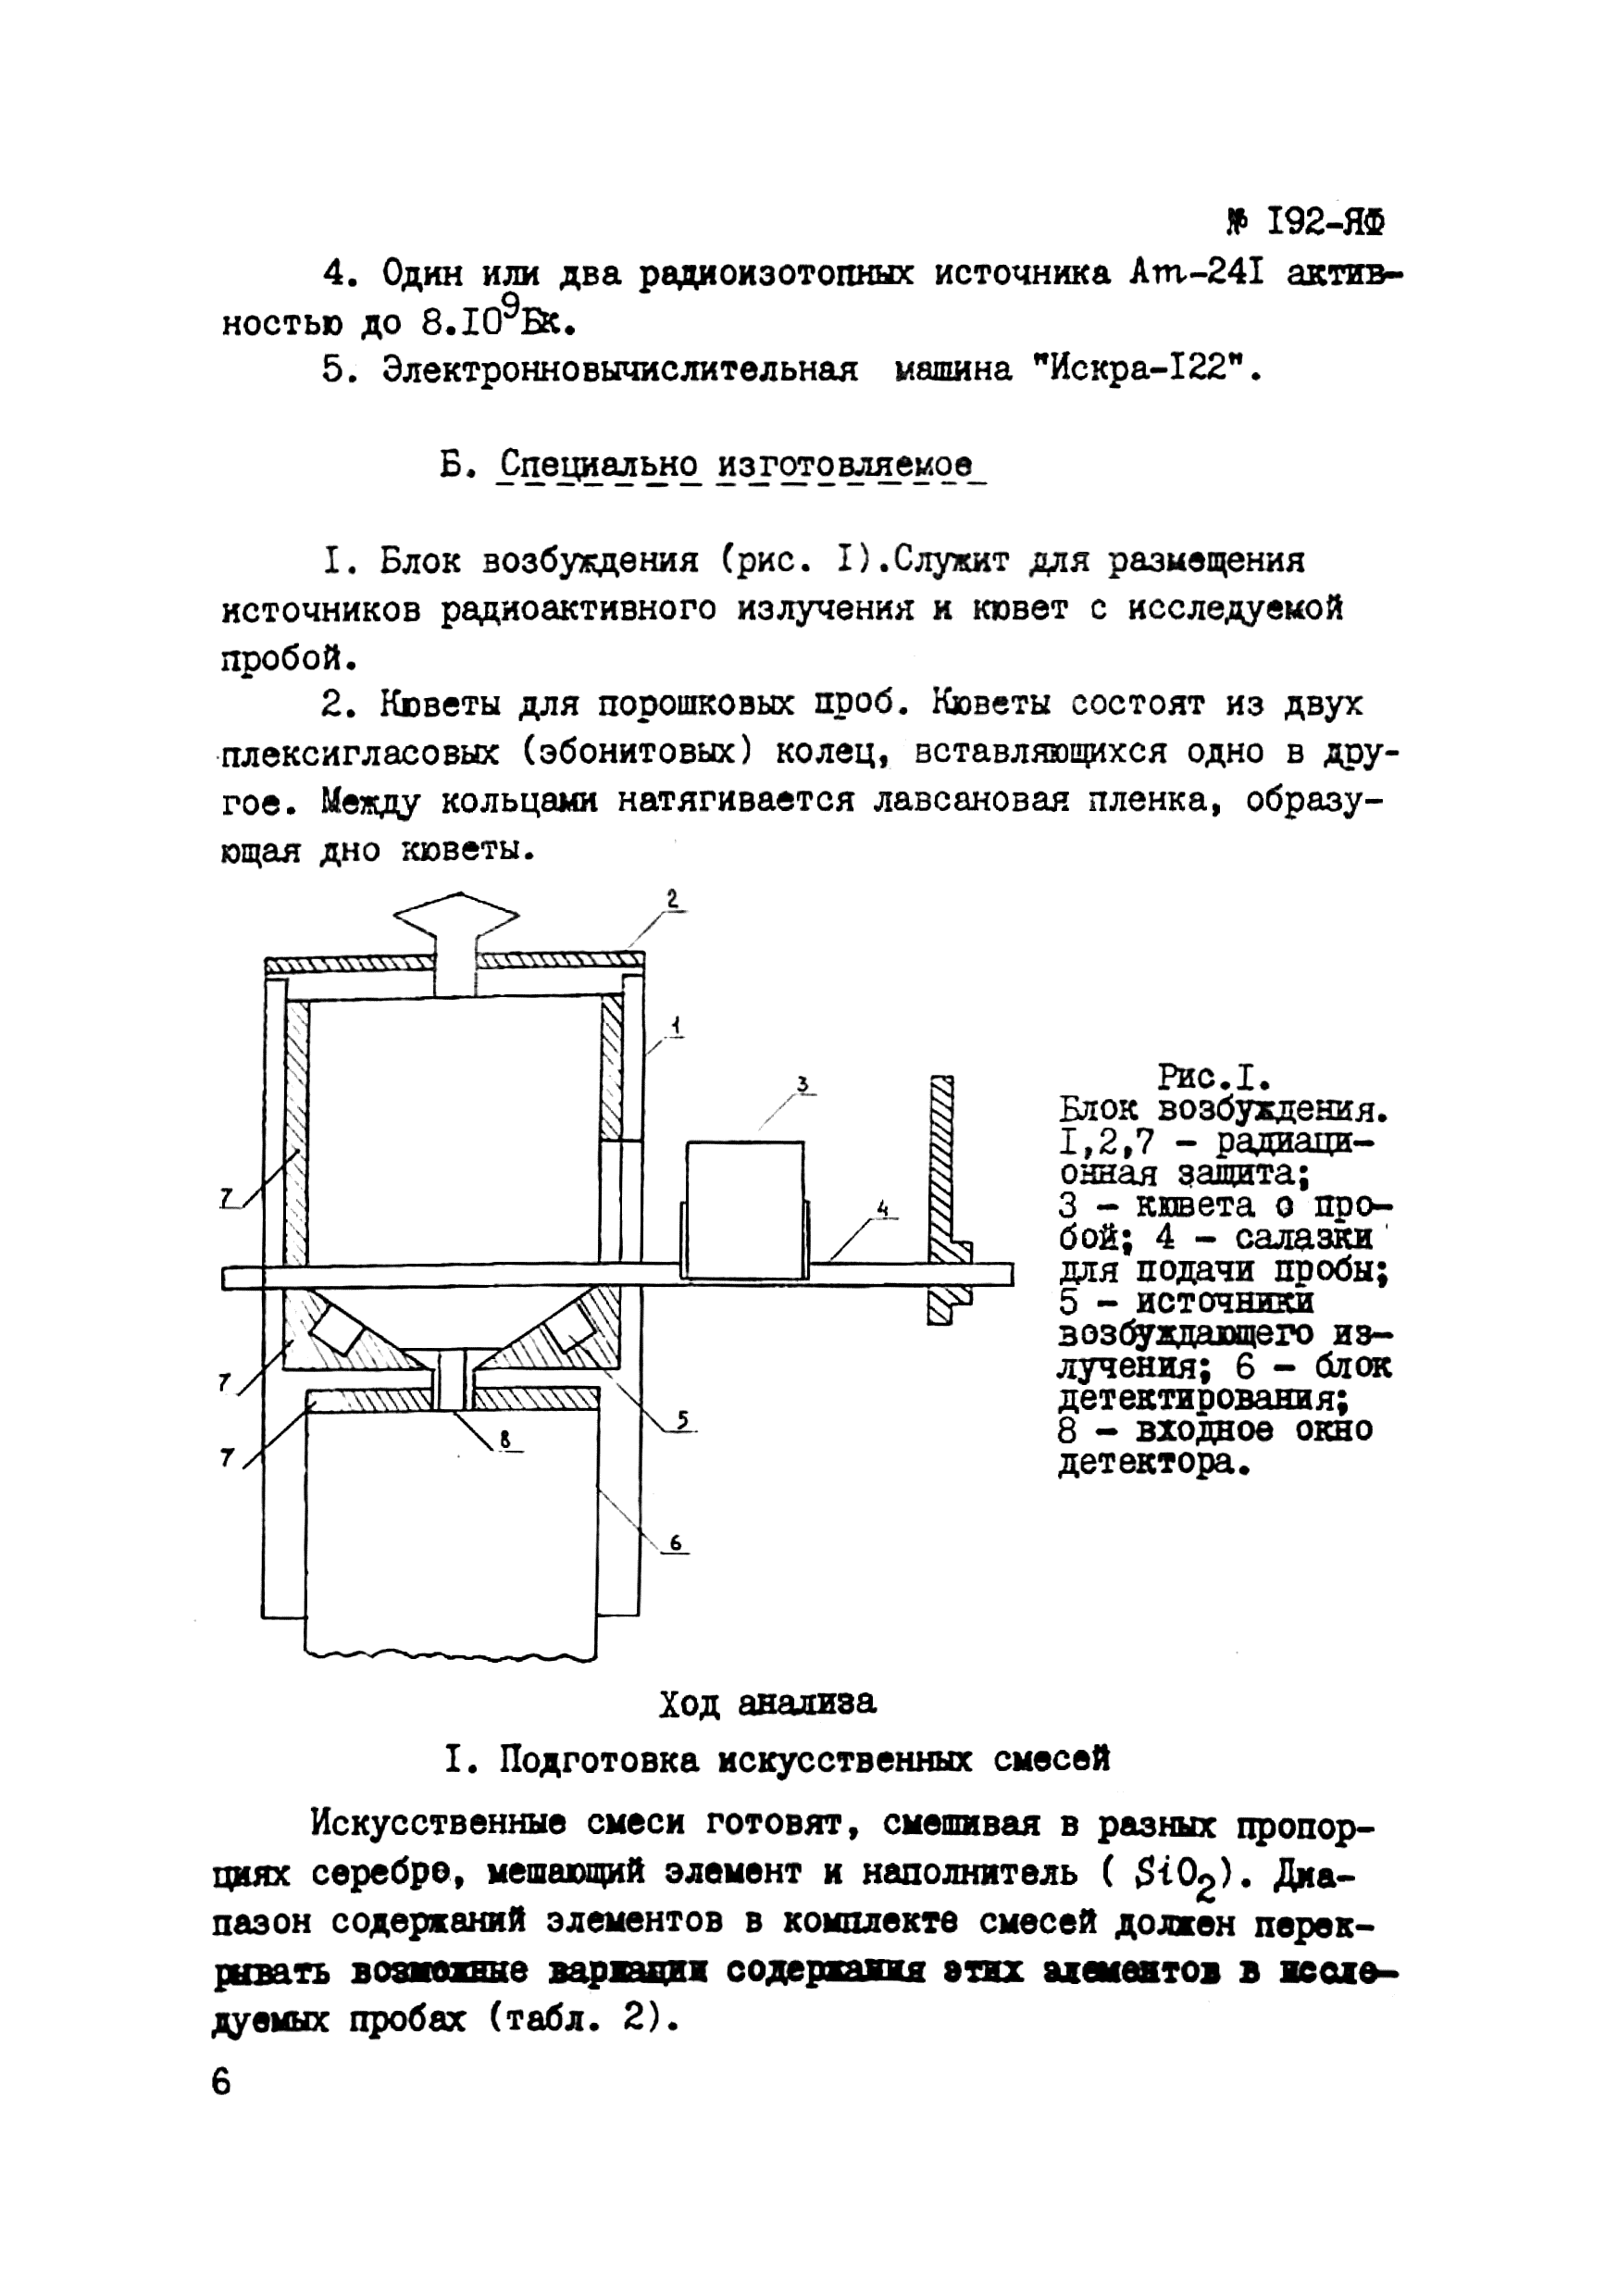 Инструкция НСАМ 192-ЯФ